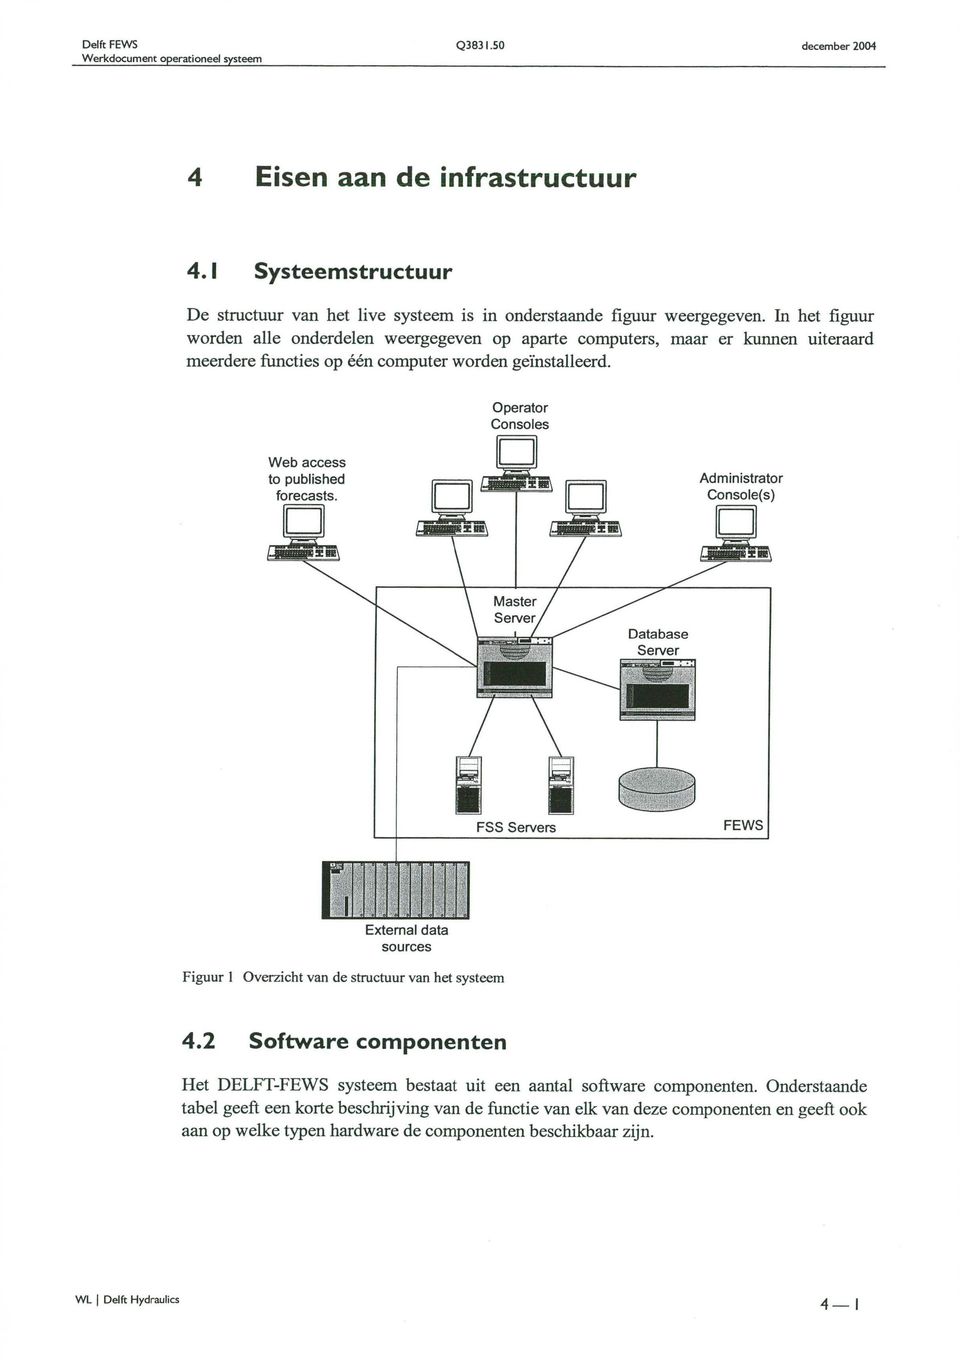 Operator Consoles IlI 1 1 1 1 1 External data sources Figuur 1 Overzicht van de structuur van het systeem 4.